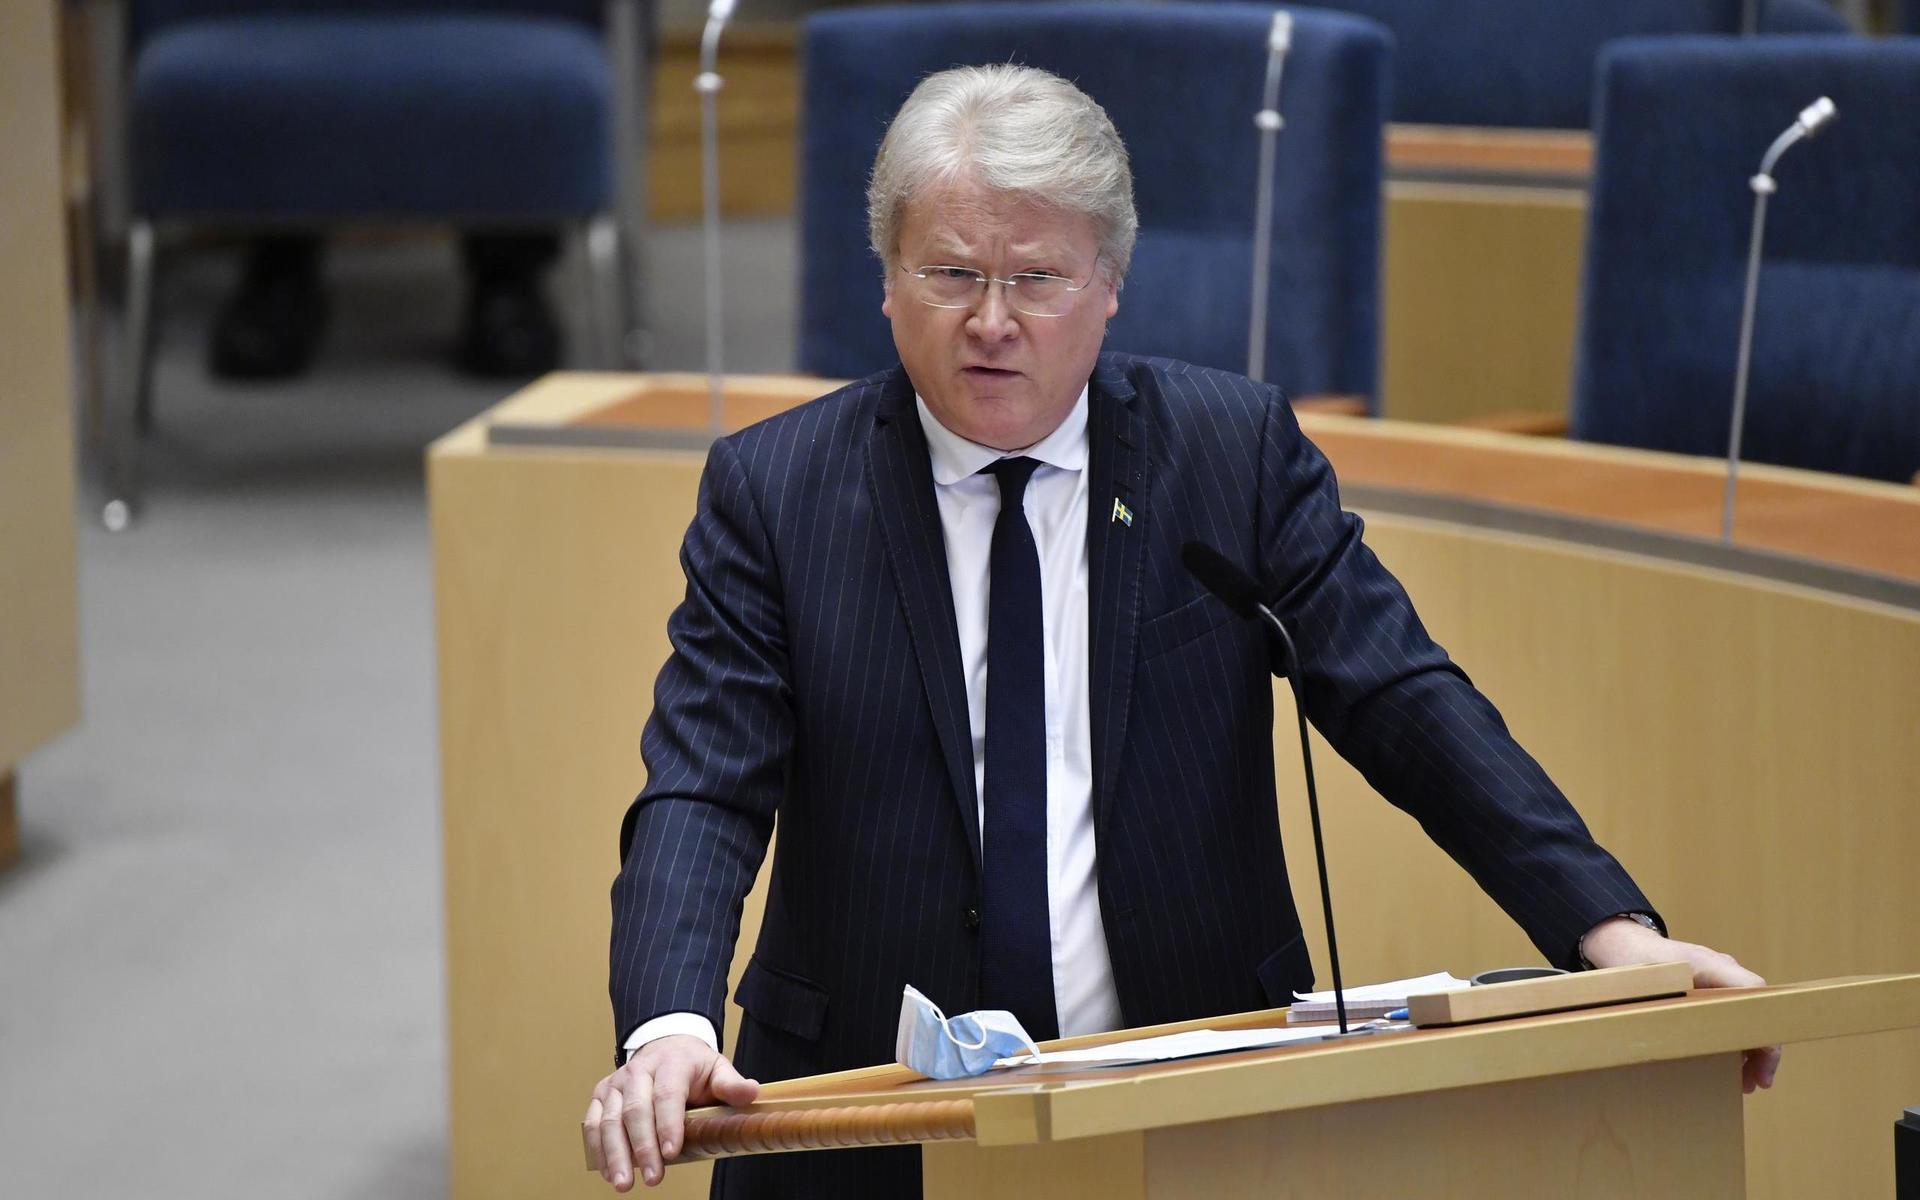 STOCKHOLM 20210224Riksdagsledamoten Lars Adaktusson (KD) under den utrikespolitiska debatten i riksdagen.Foto: Henrik Montgomery / TT kod 10060